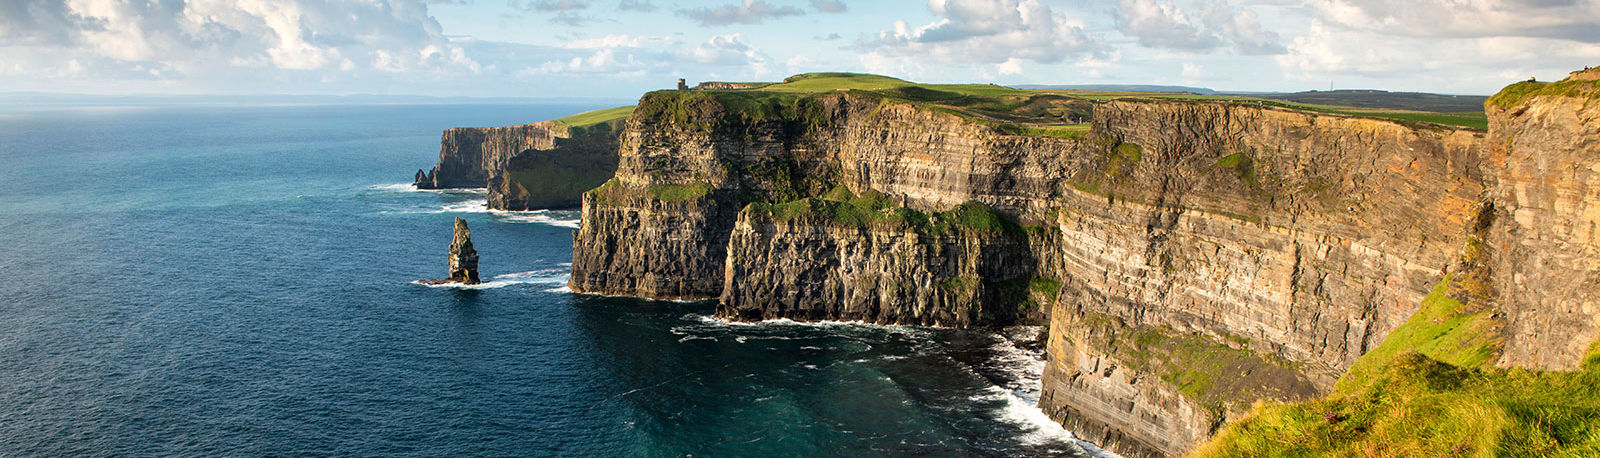 Bild für Cliffs of Moher © Christopher Hill Photographic 2014, Tourism Ireland